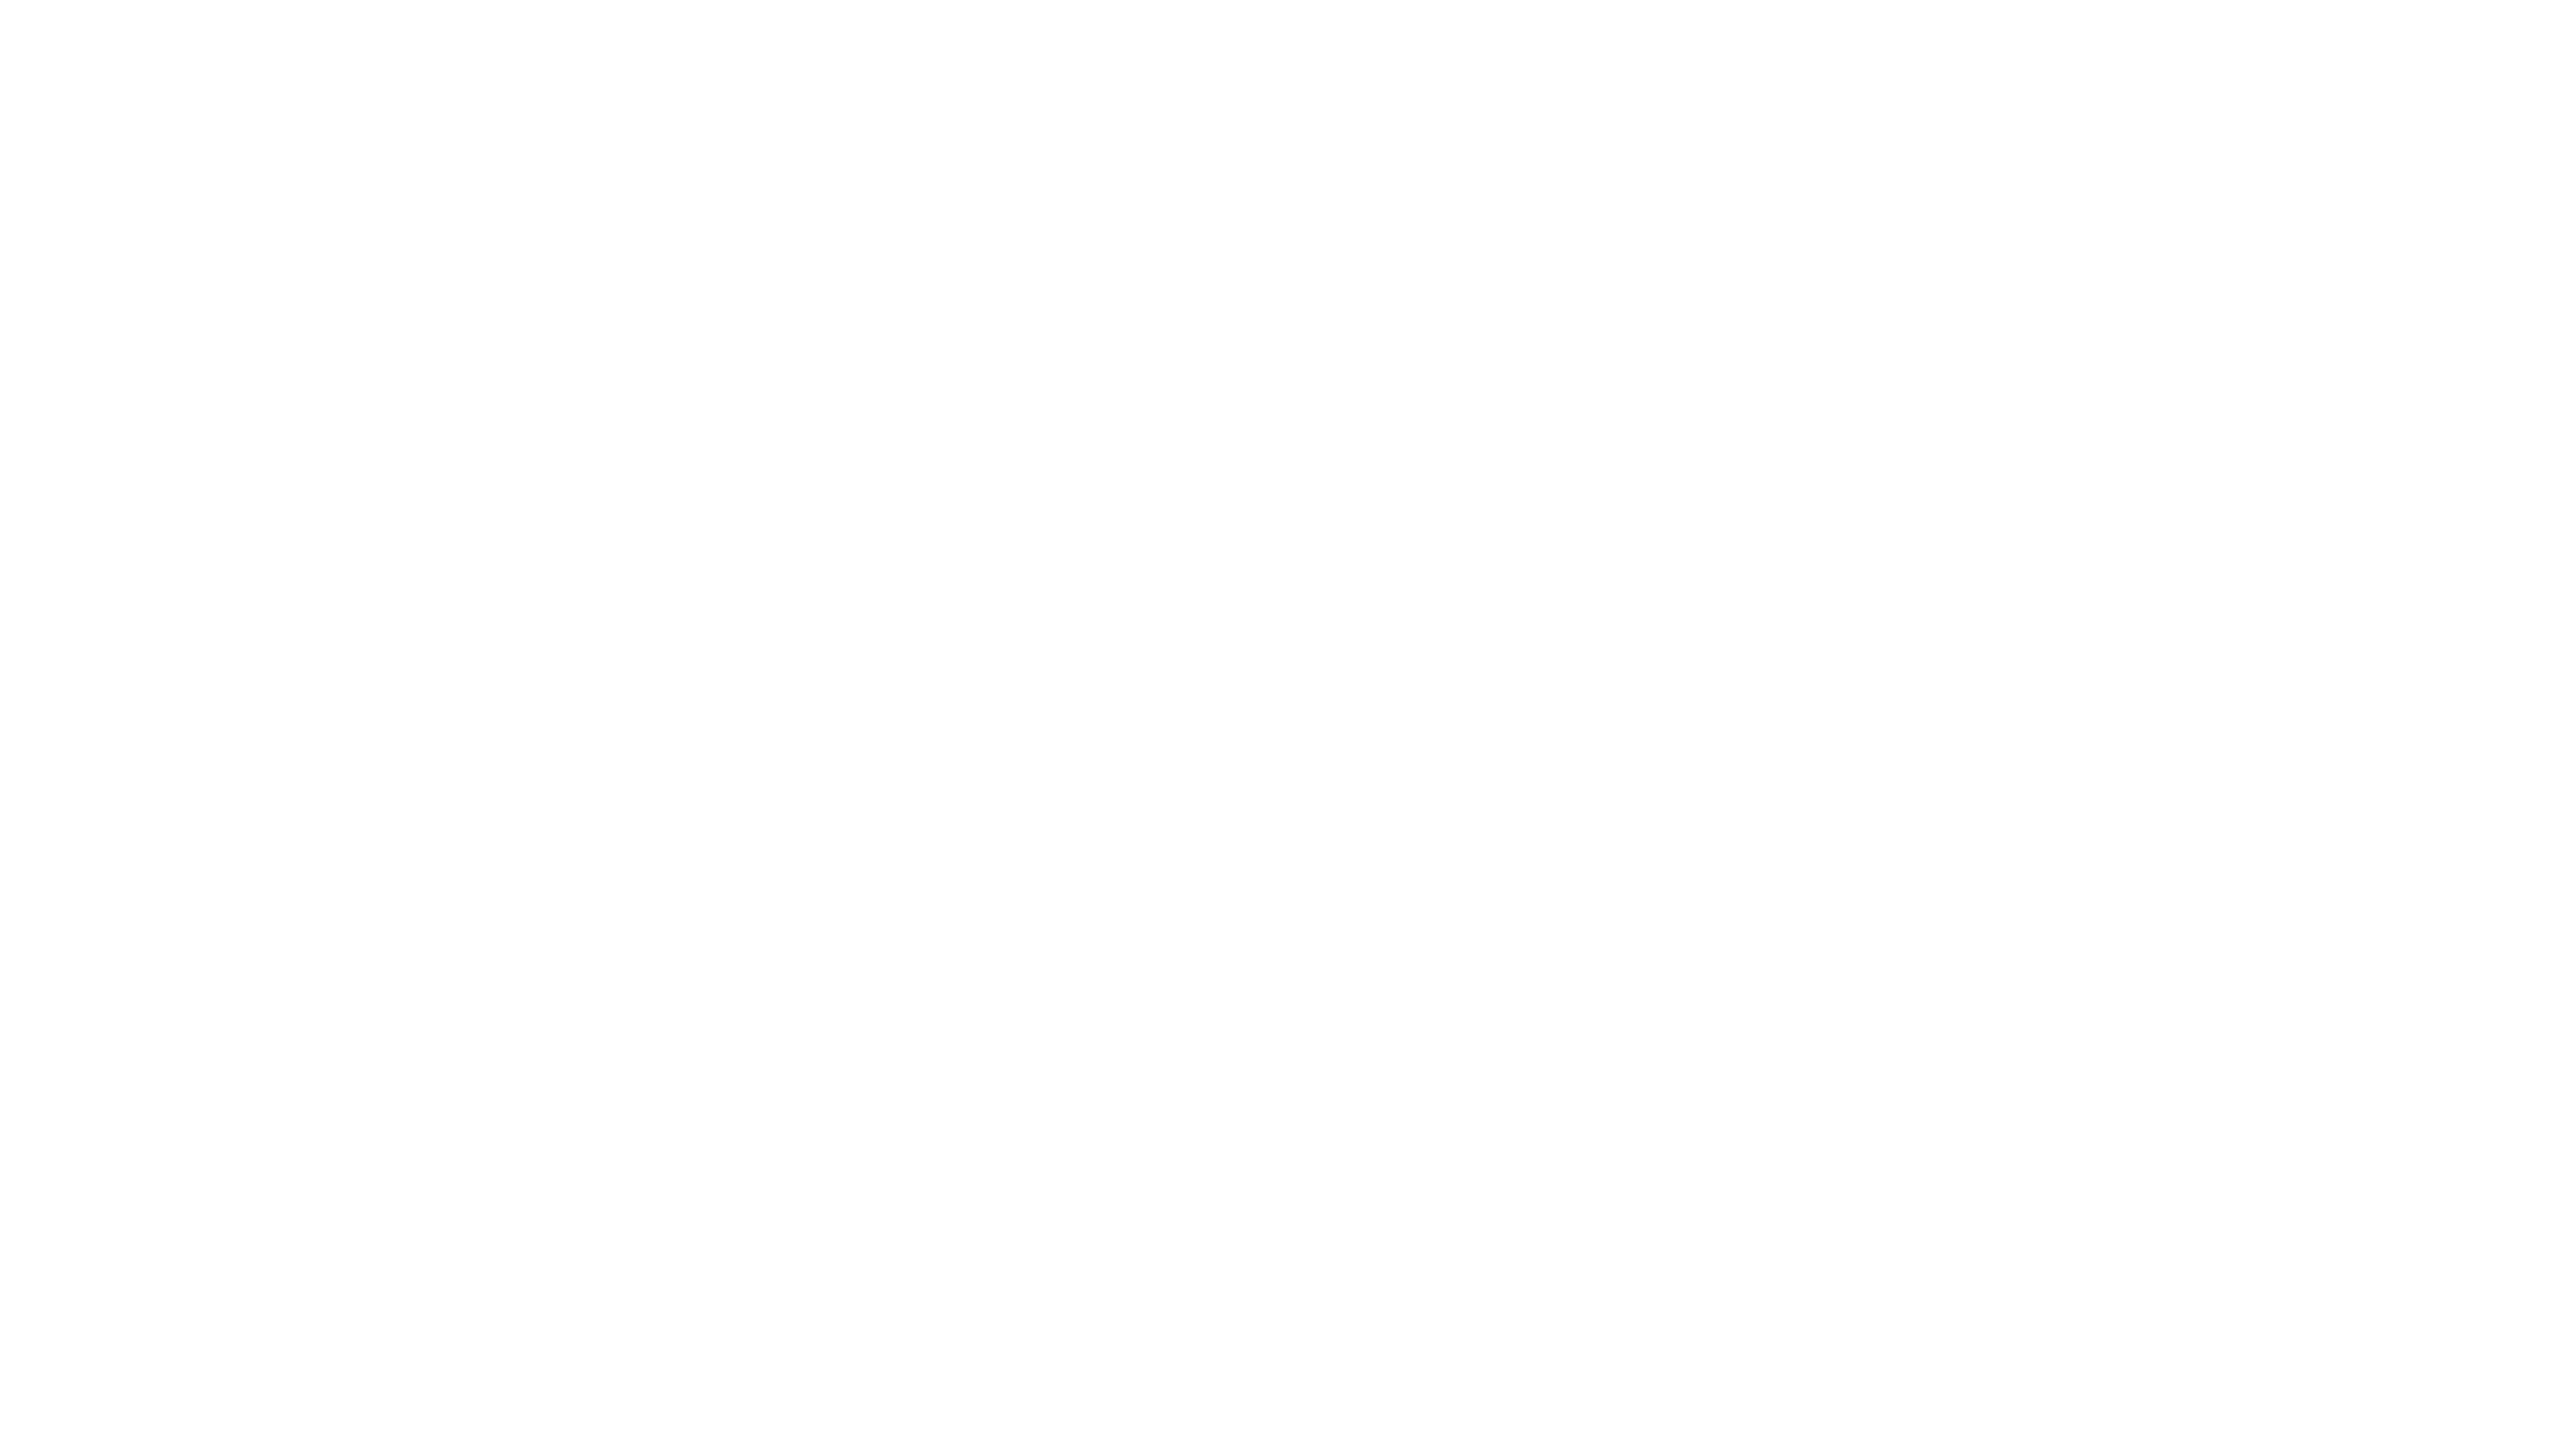 Pizza Place São Caetano - Santa Paula Preço e Cardápio delivery - Rappi